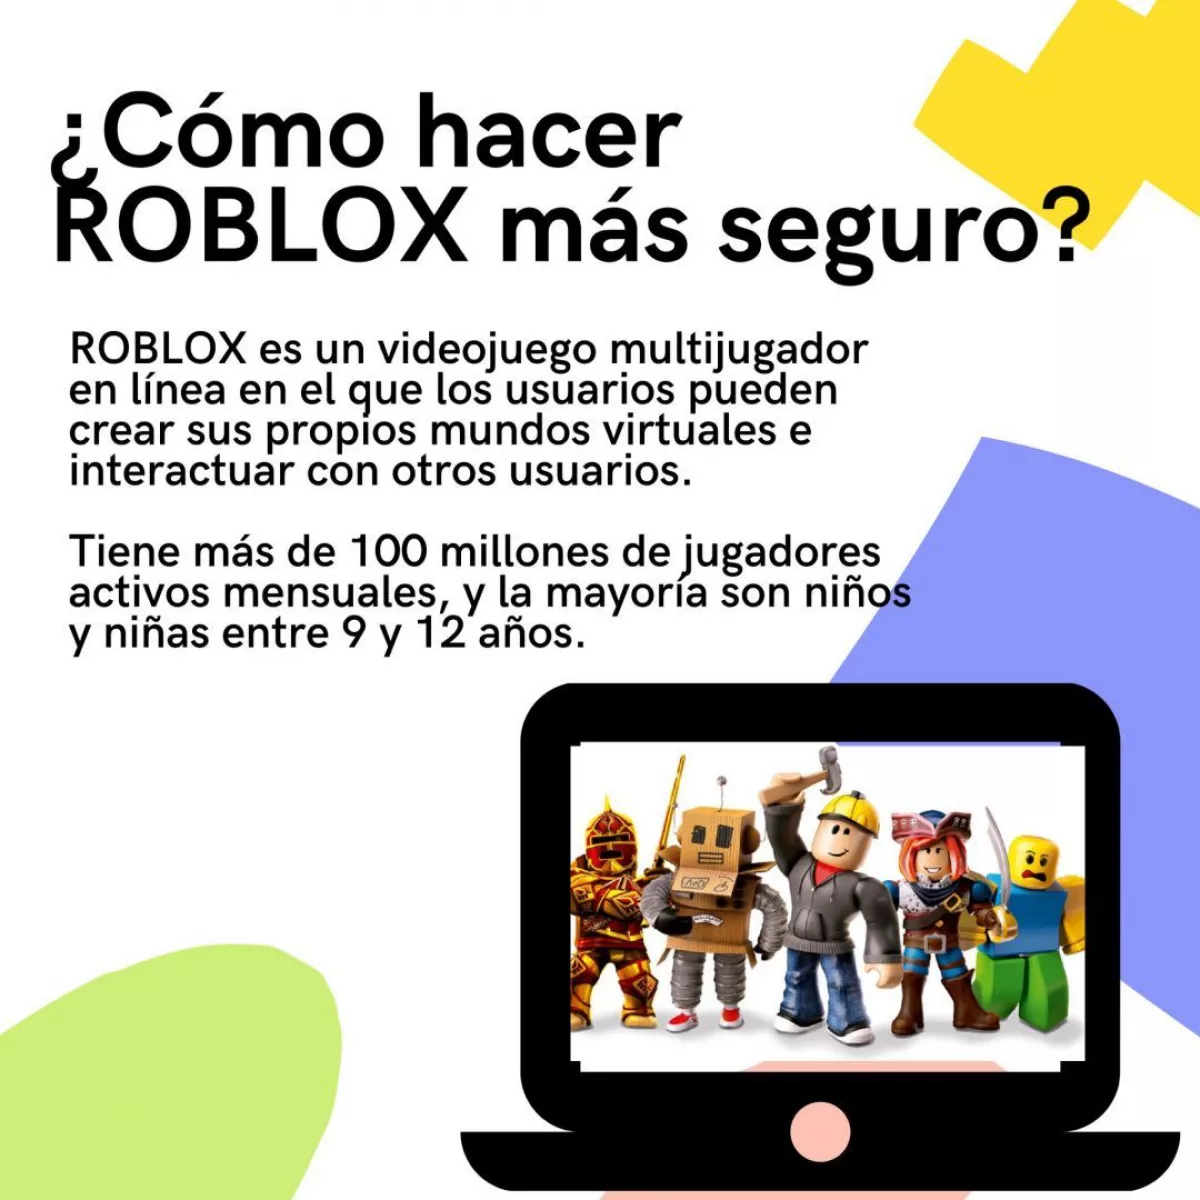 Roblox, la plataforma de juegos con la que algunos adolescentes